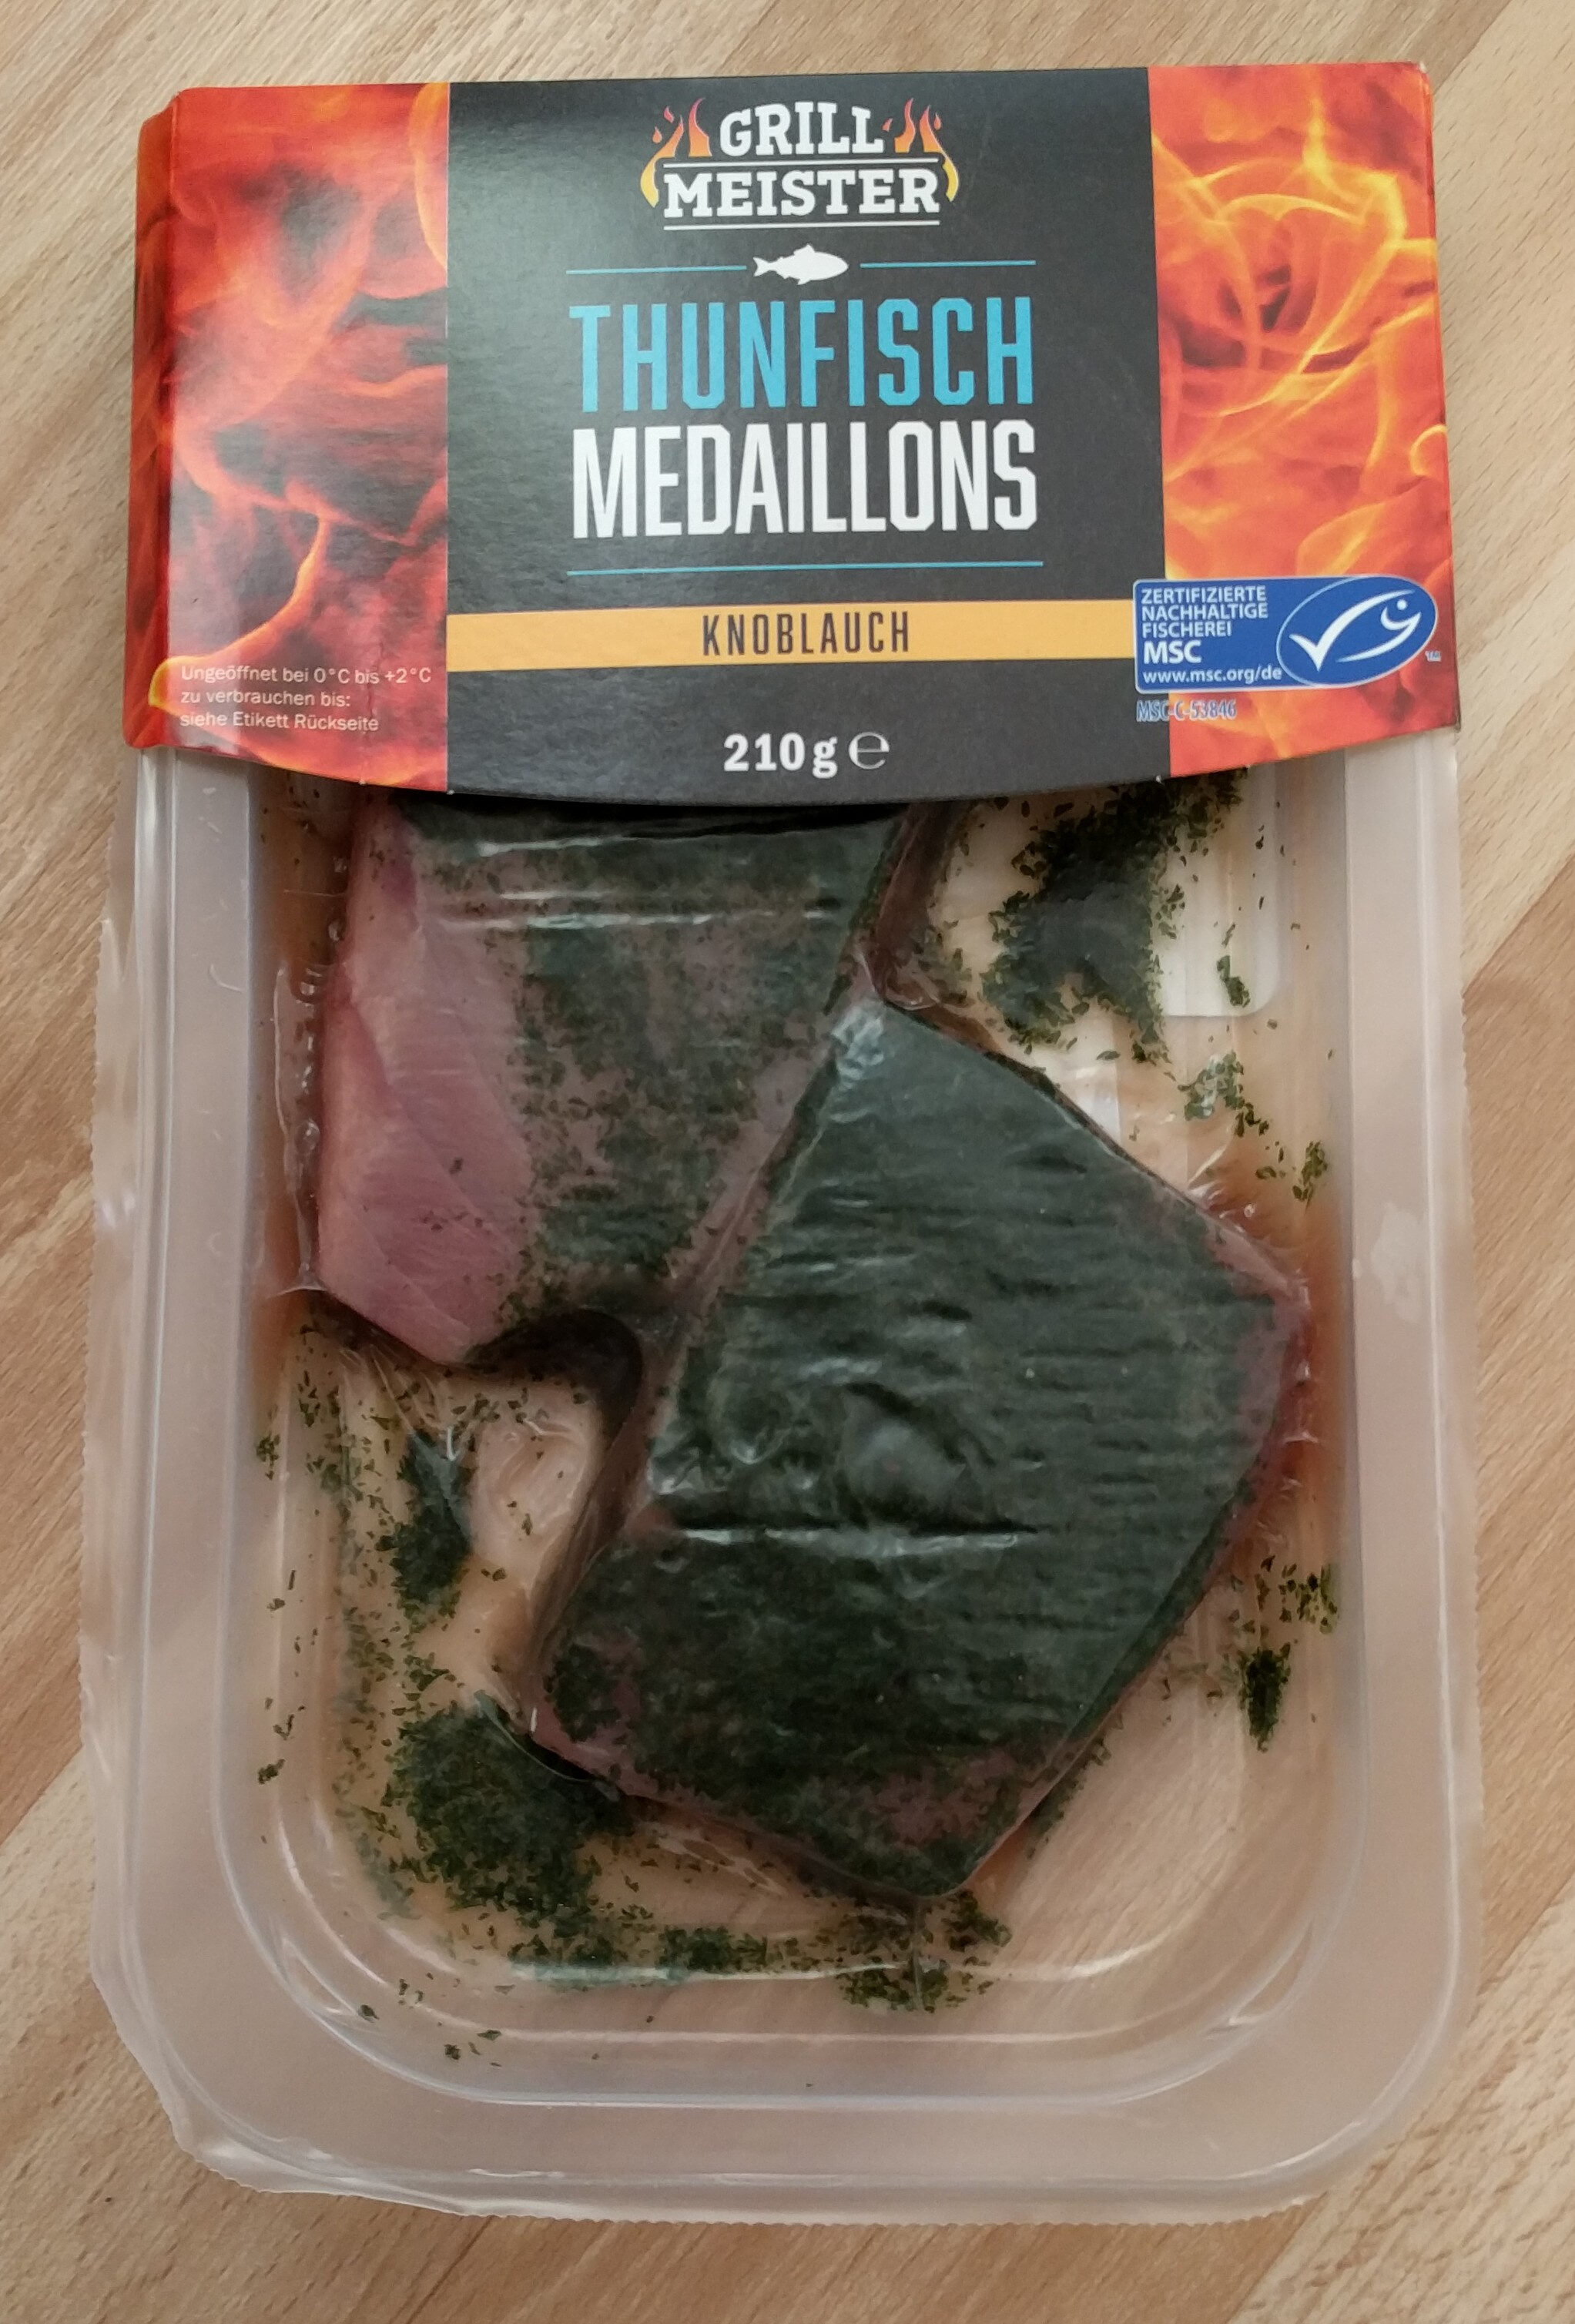 Thunfisch Medaillons - Product - de